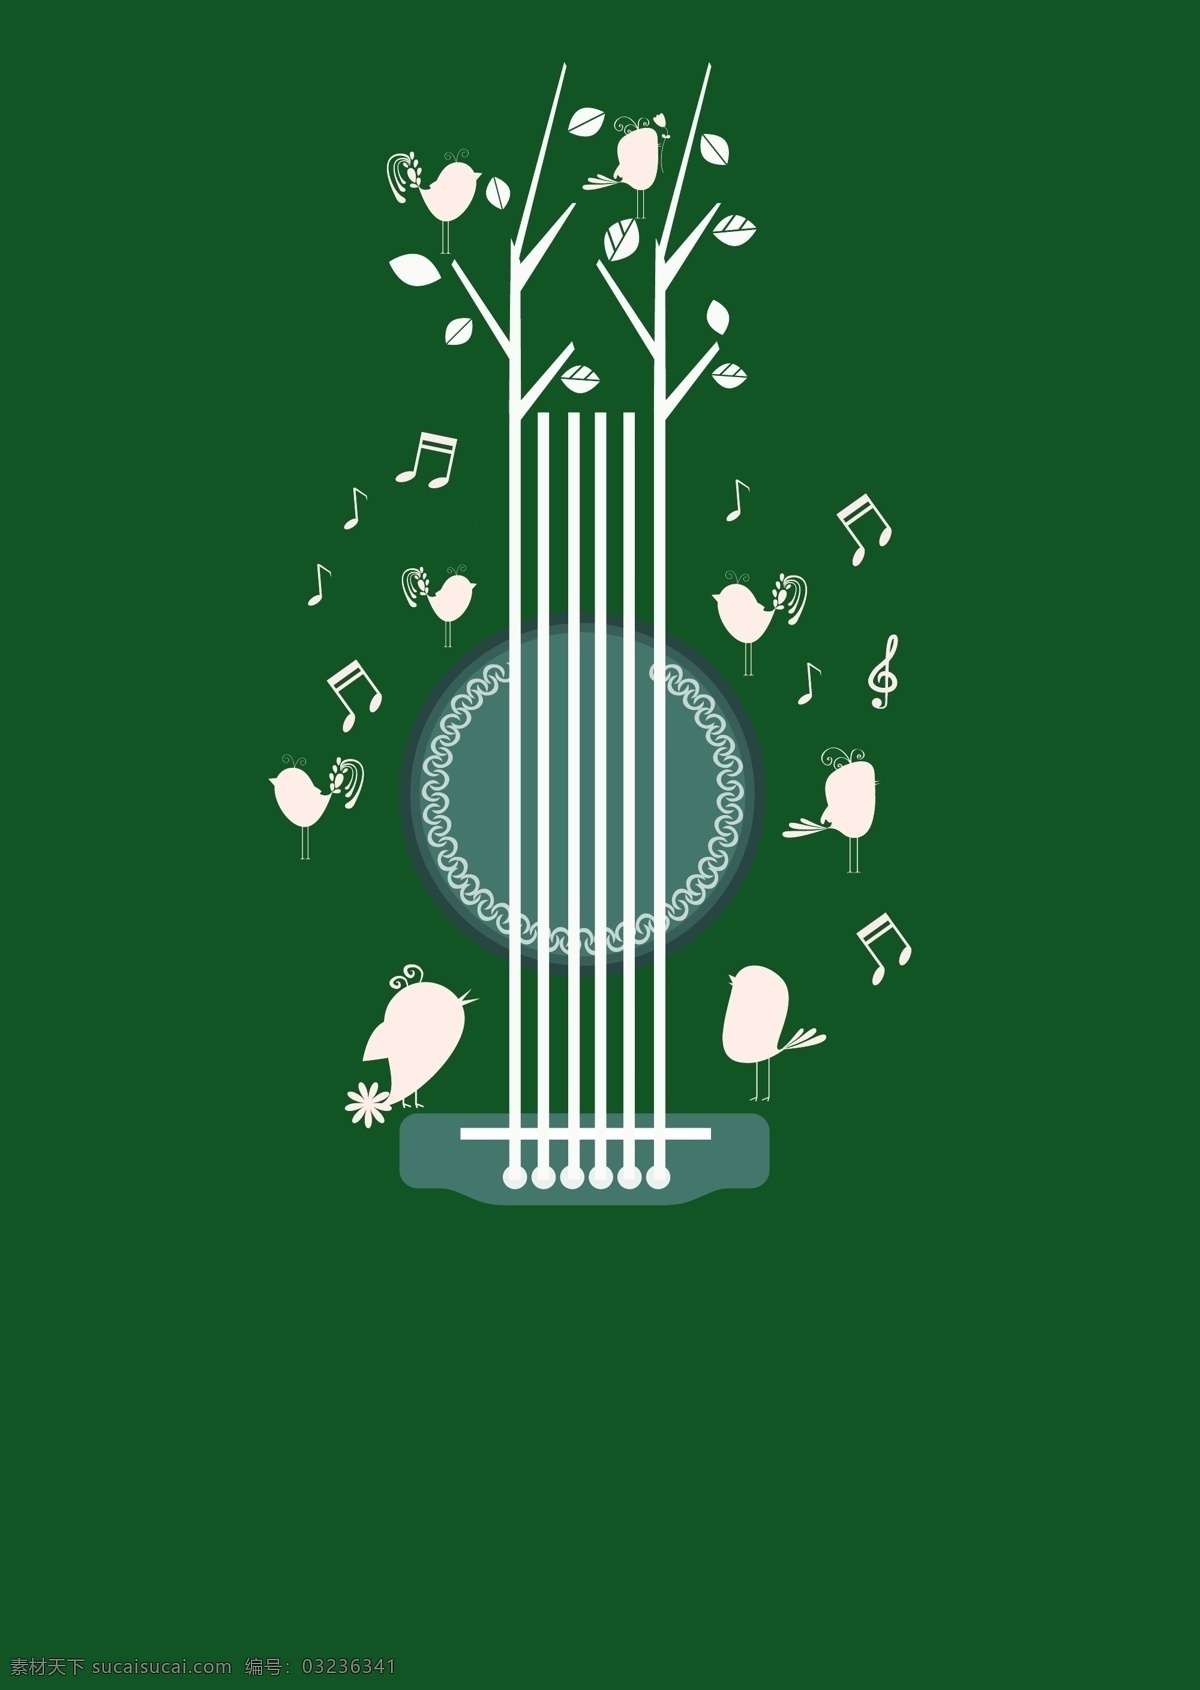 绿色 音乐 简约 海报 背景 矢量 简洁 小鸟 树枝